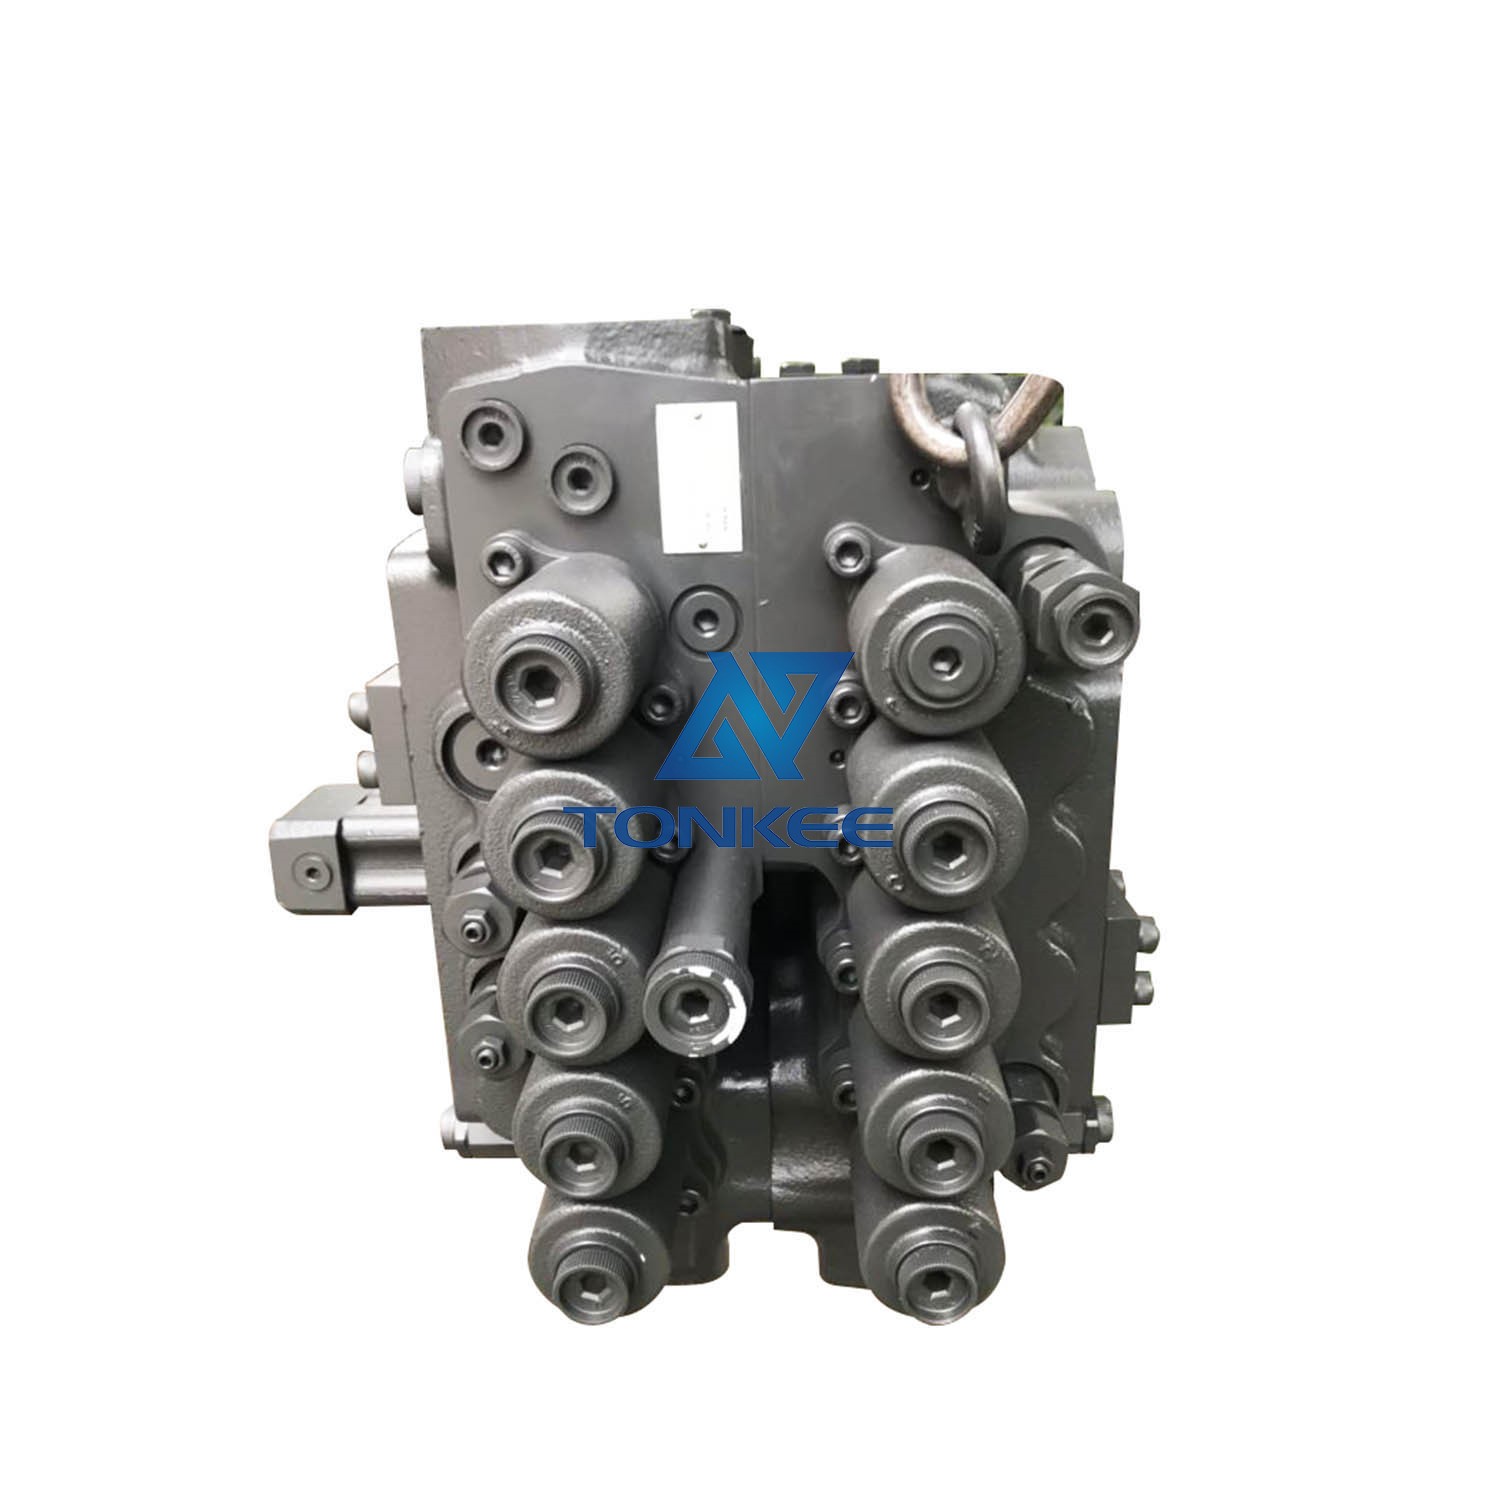 SOLAR 220LC-V S225 main control valve 426-E0064 main control valve